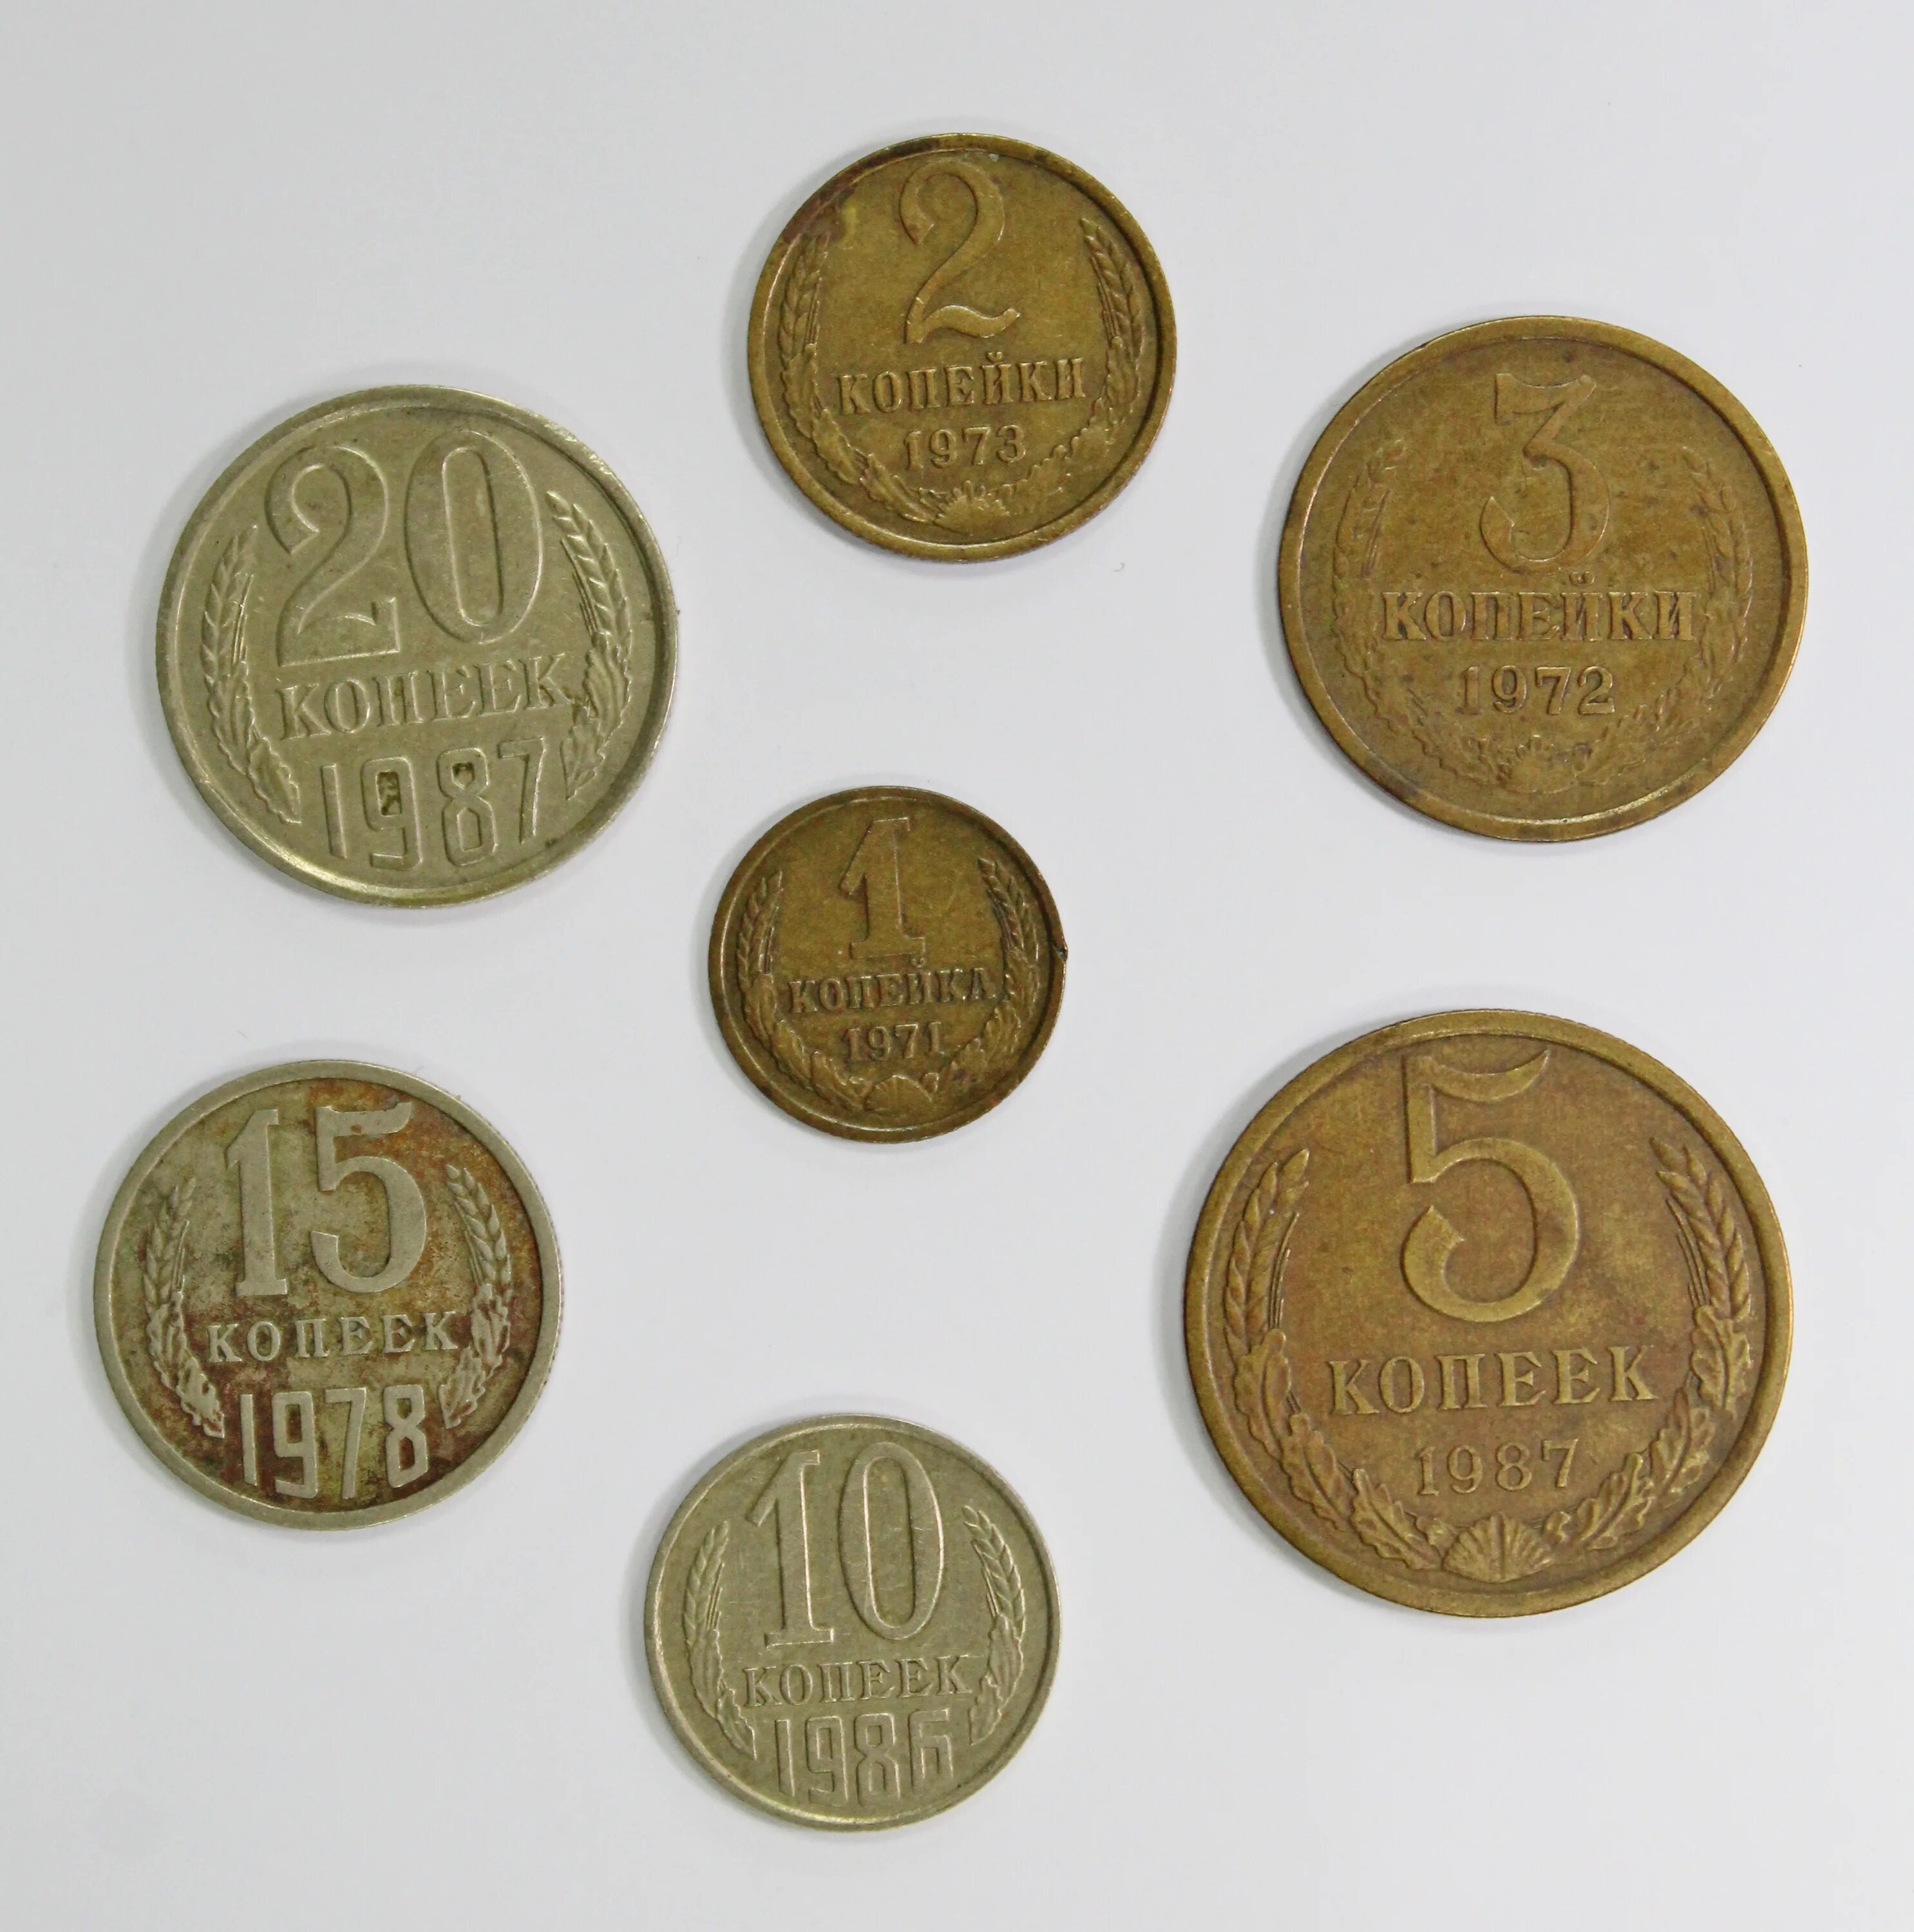 1 гривна стоит 3 рубля 70 копеек. Советские монеты. Мелкие монеты. Коллекция советских монет. Нумизматические монеты.